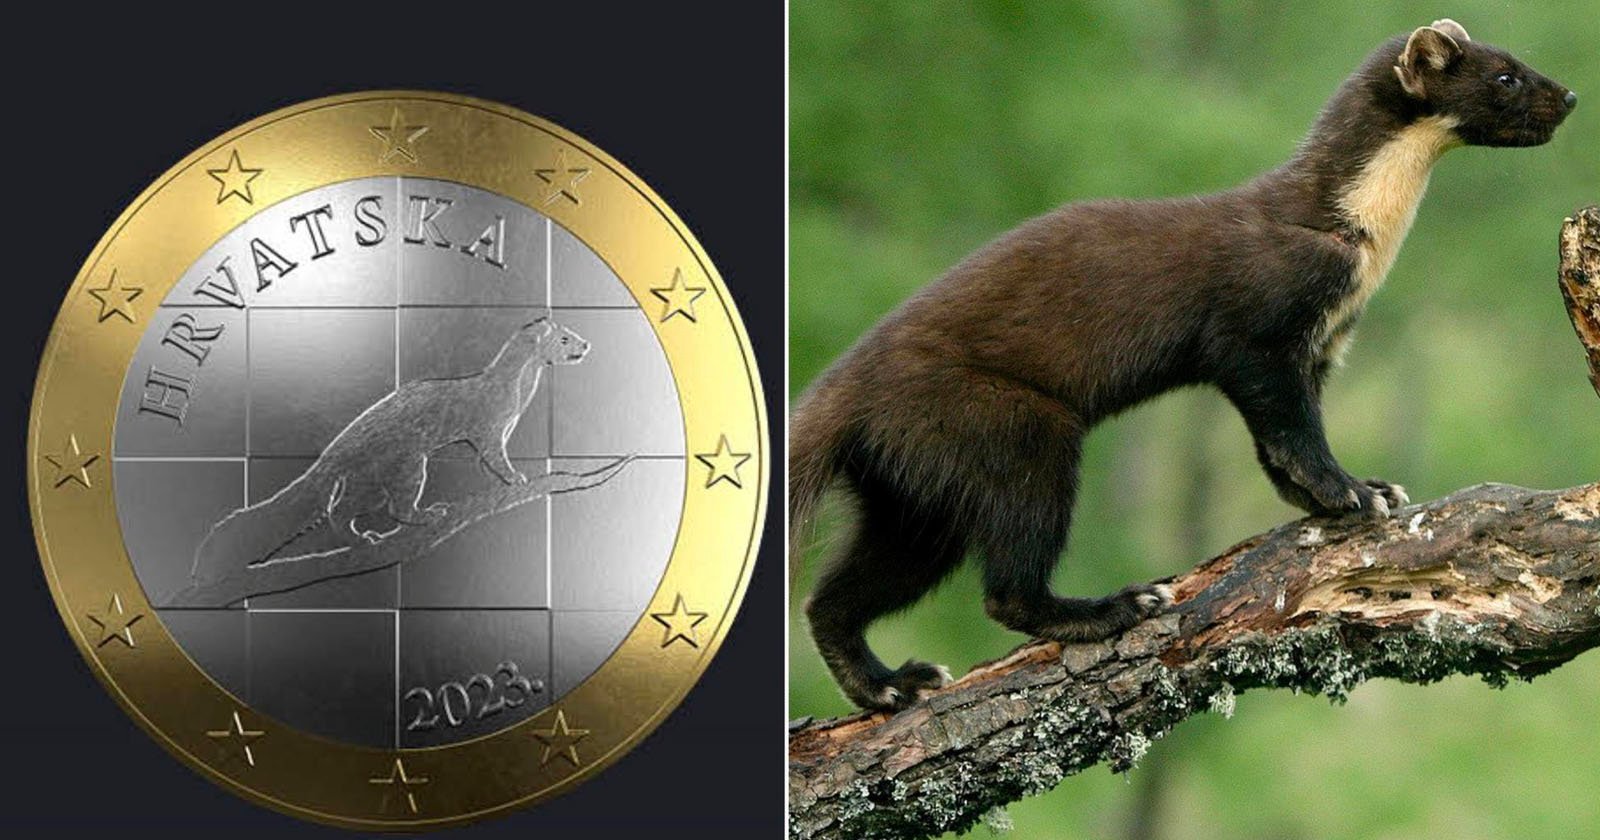 Croatian coin plagiarism